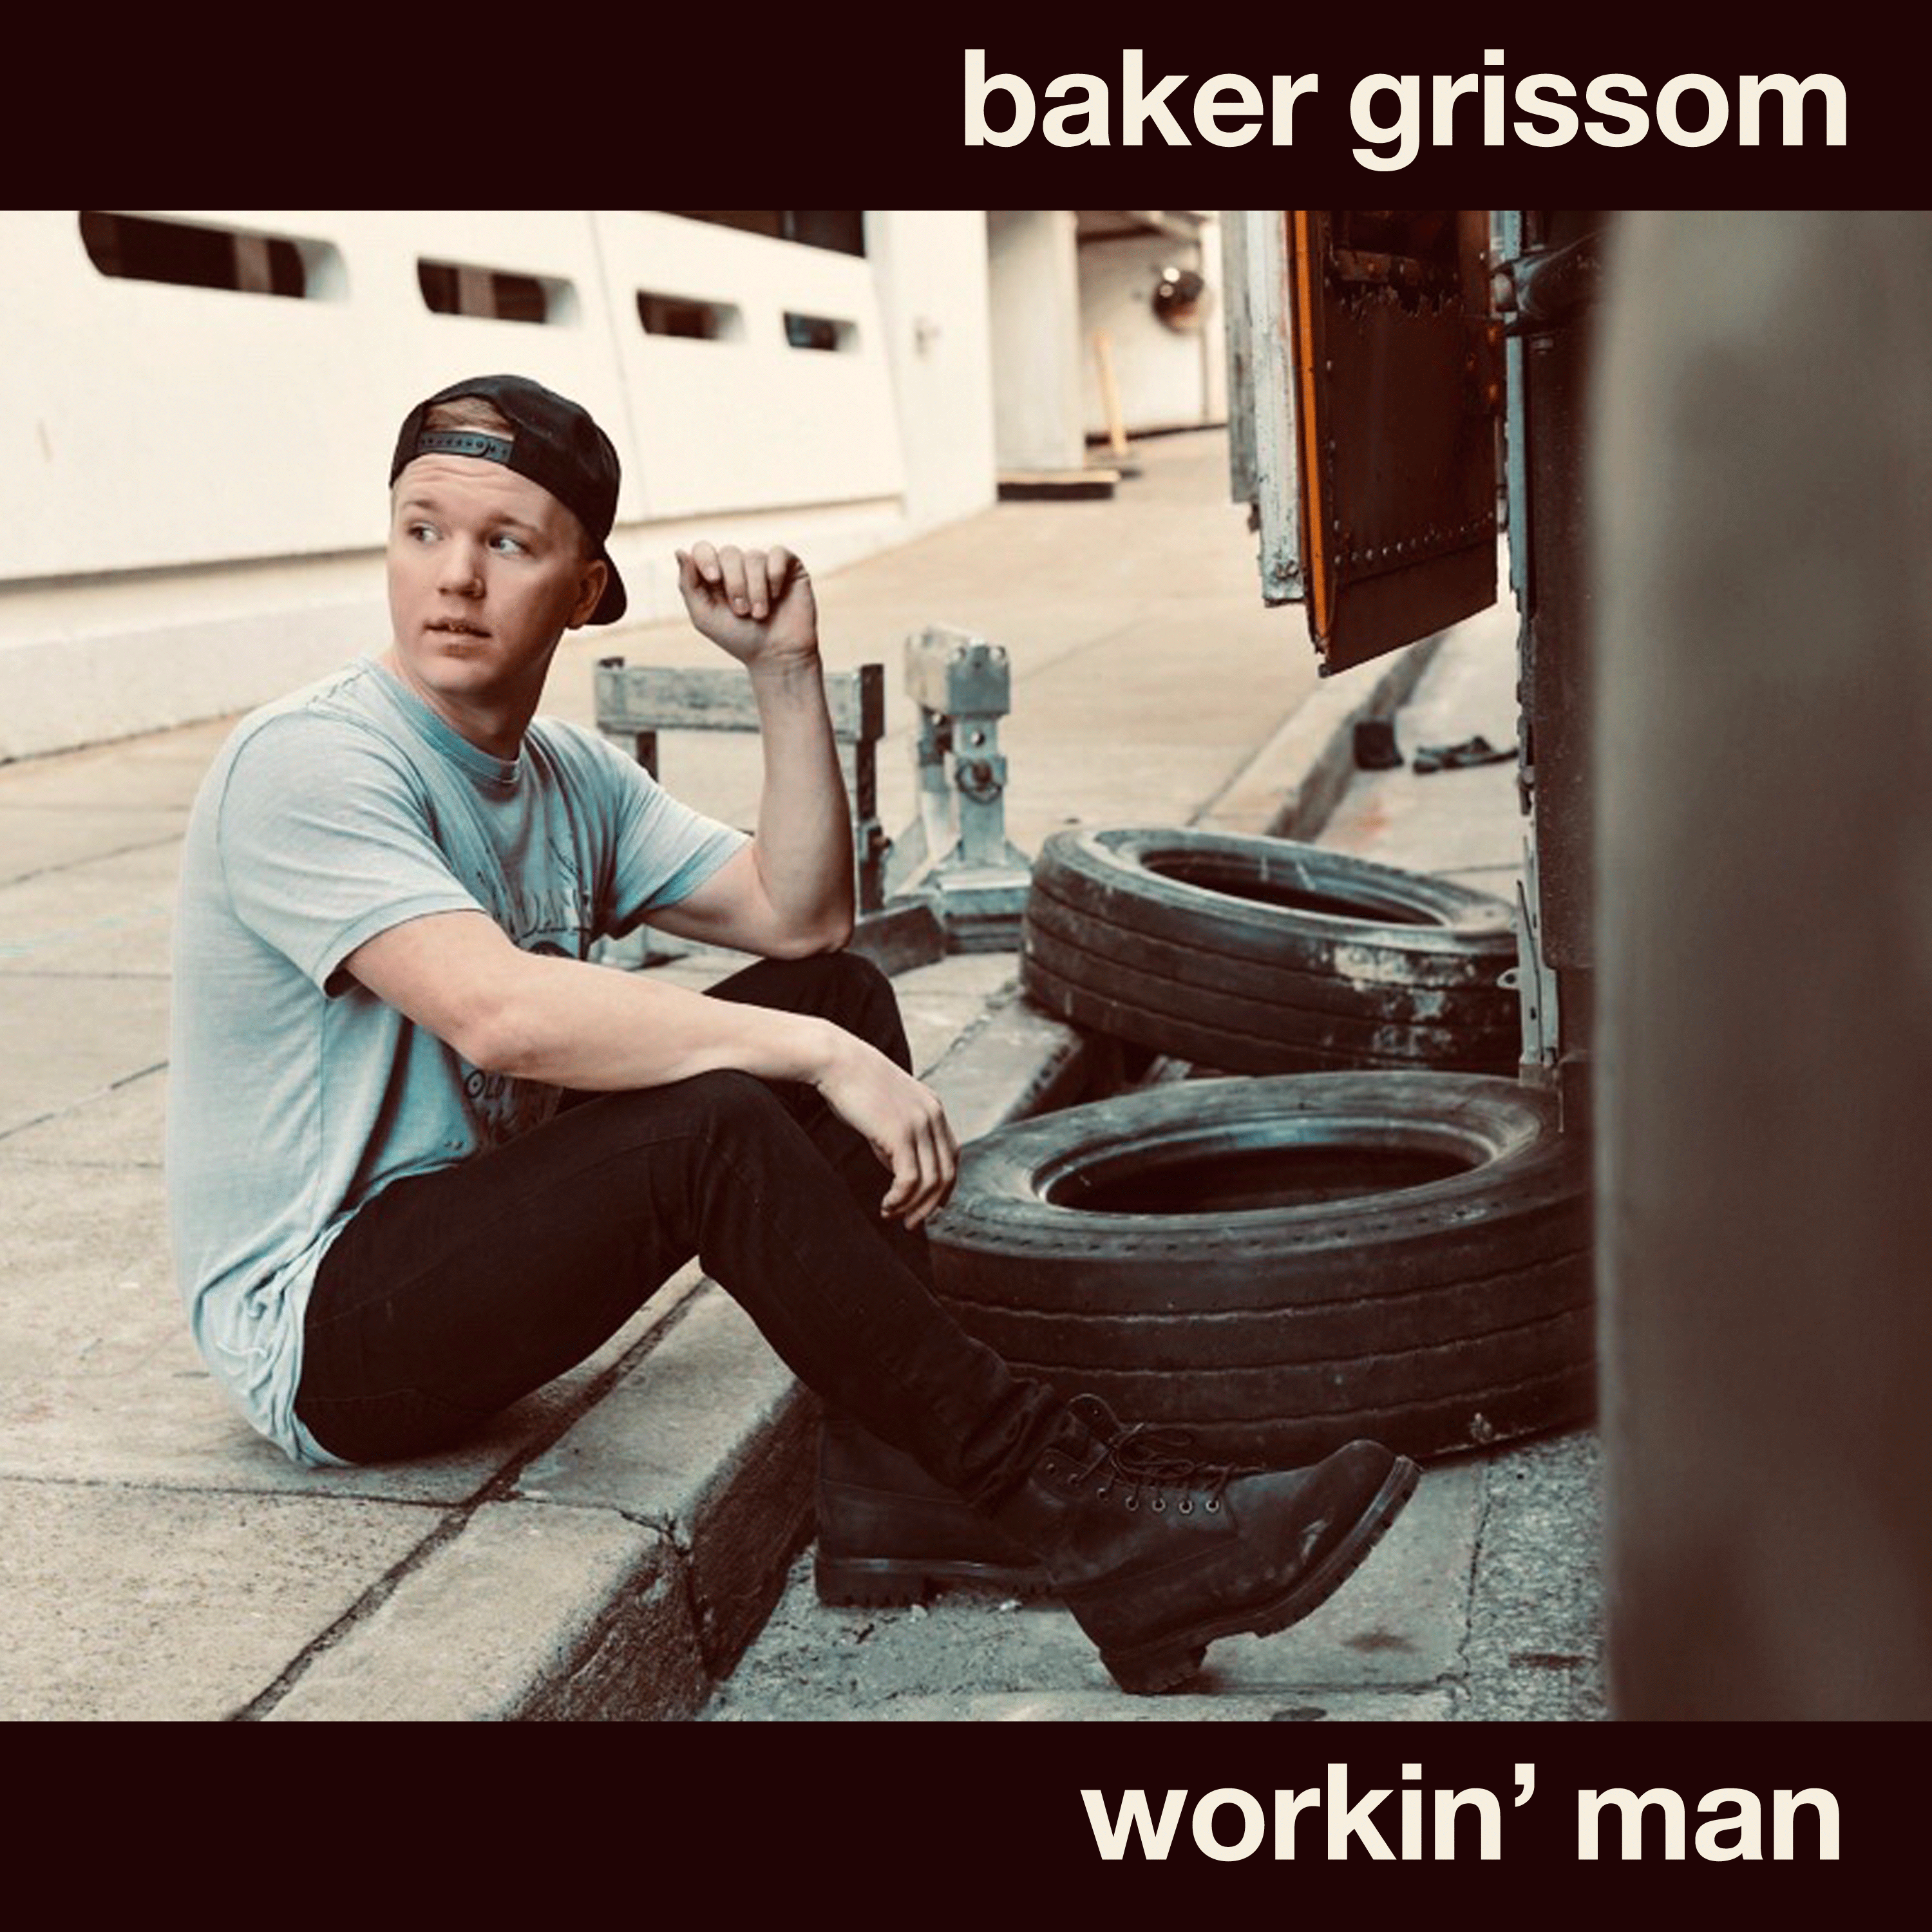 baker grissom workin' man